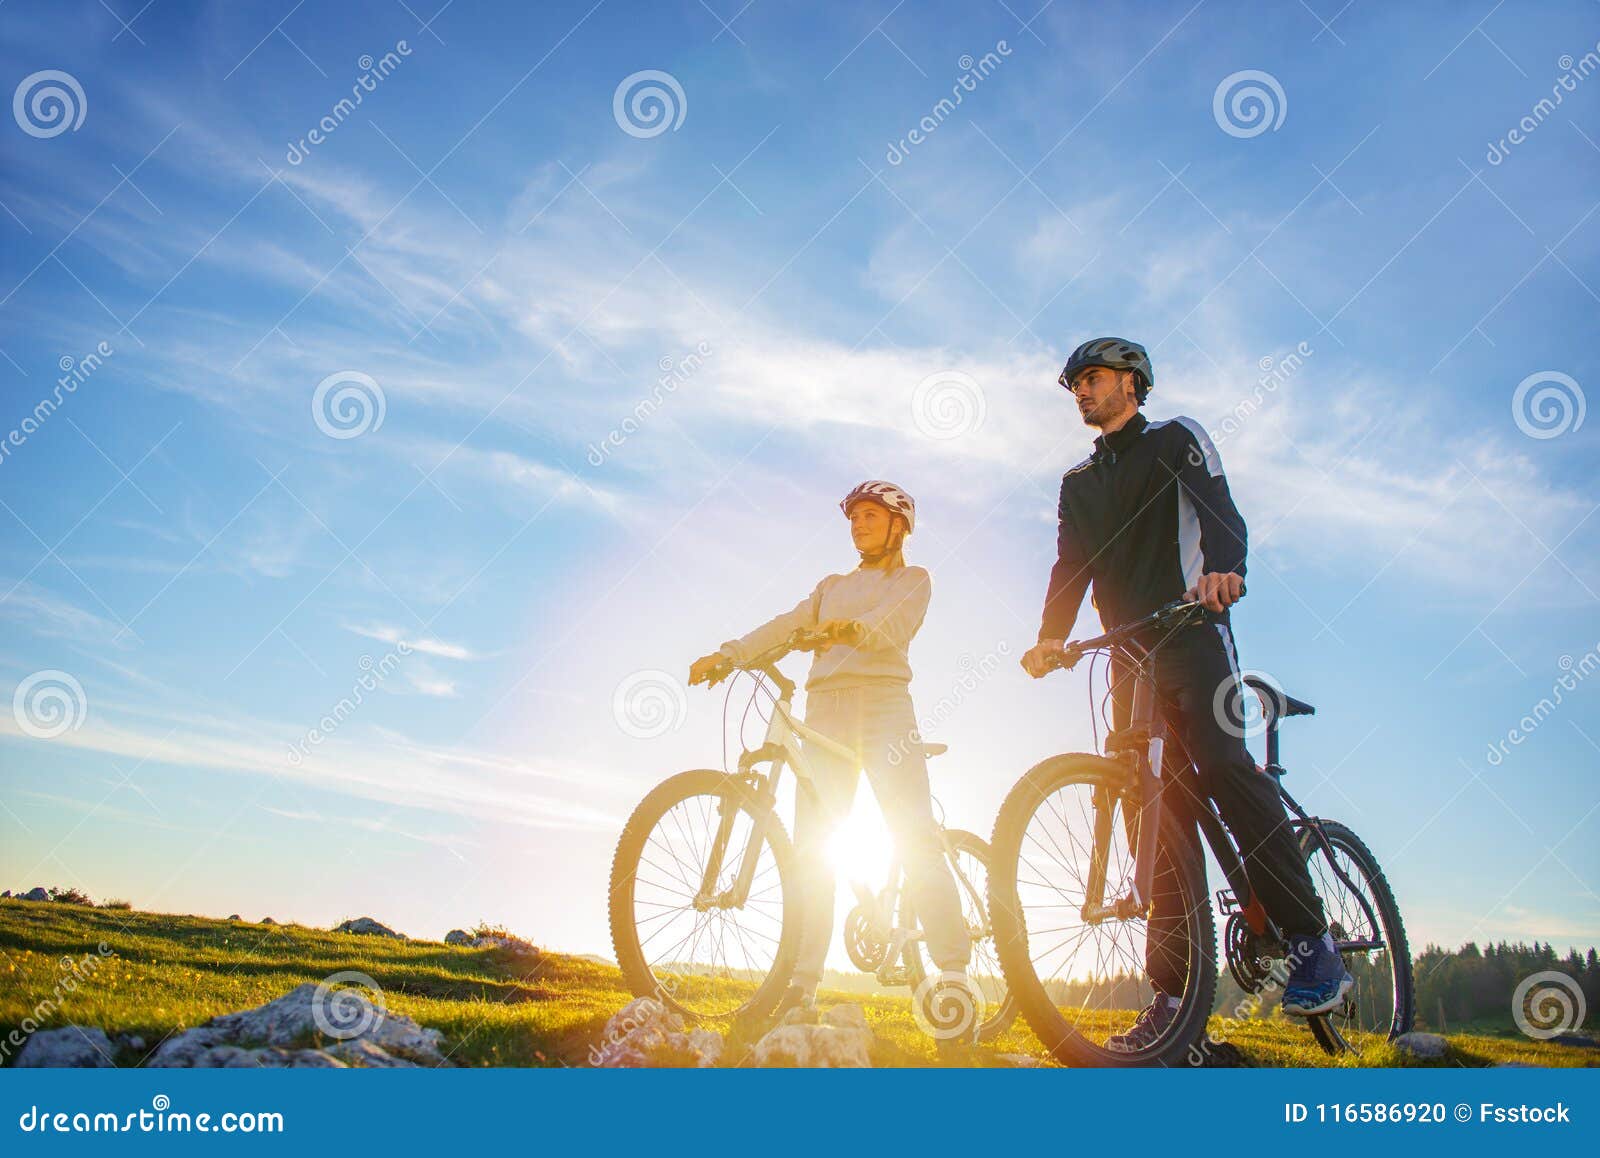 情侣自行车，情侣骑行骑车骑单车骑自行车视频素材,休闲娱乐视频素材下载,高清3840X2160视频素材下载,凌点视频素材网,编号:386701